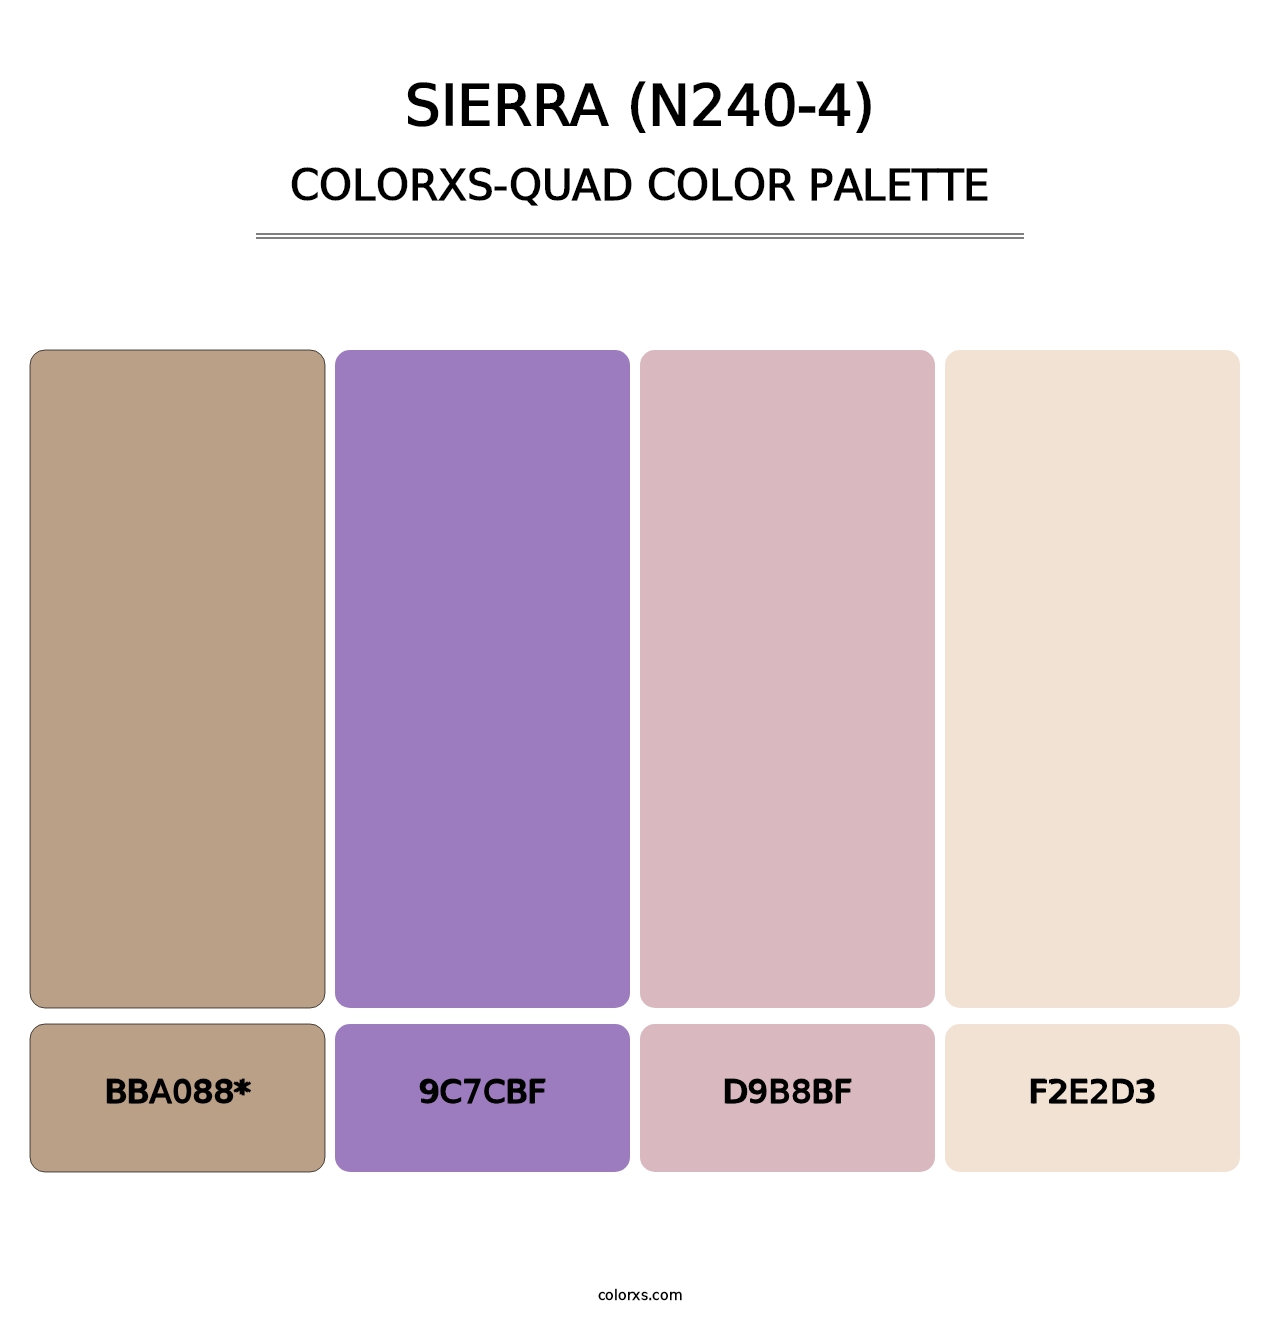 Sierra (N240-4) - Colorxs Quad Palette